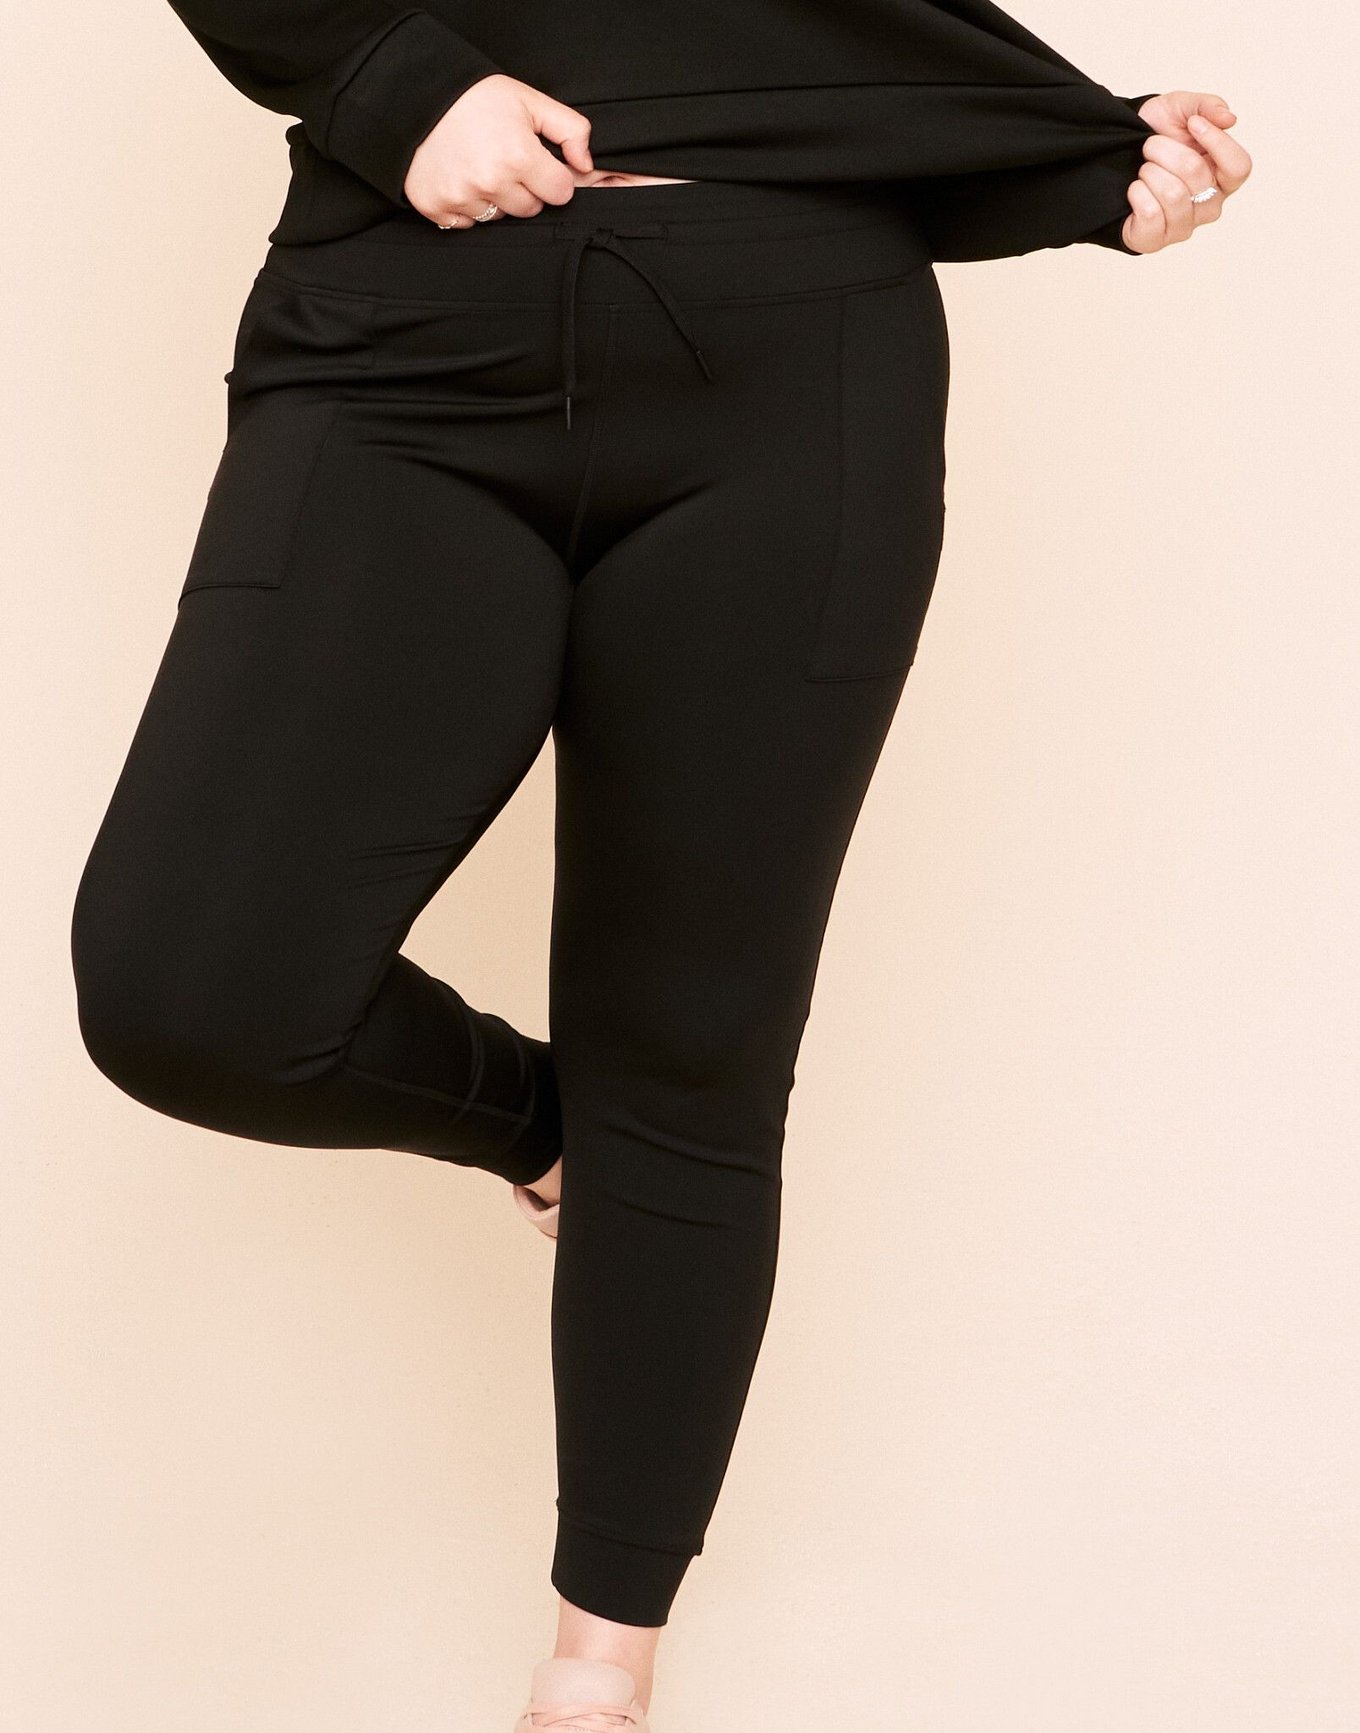 Jenesis Fitted Legging Black Plus Full length fitted legging, 1X-3X